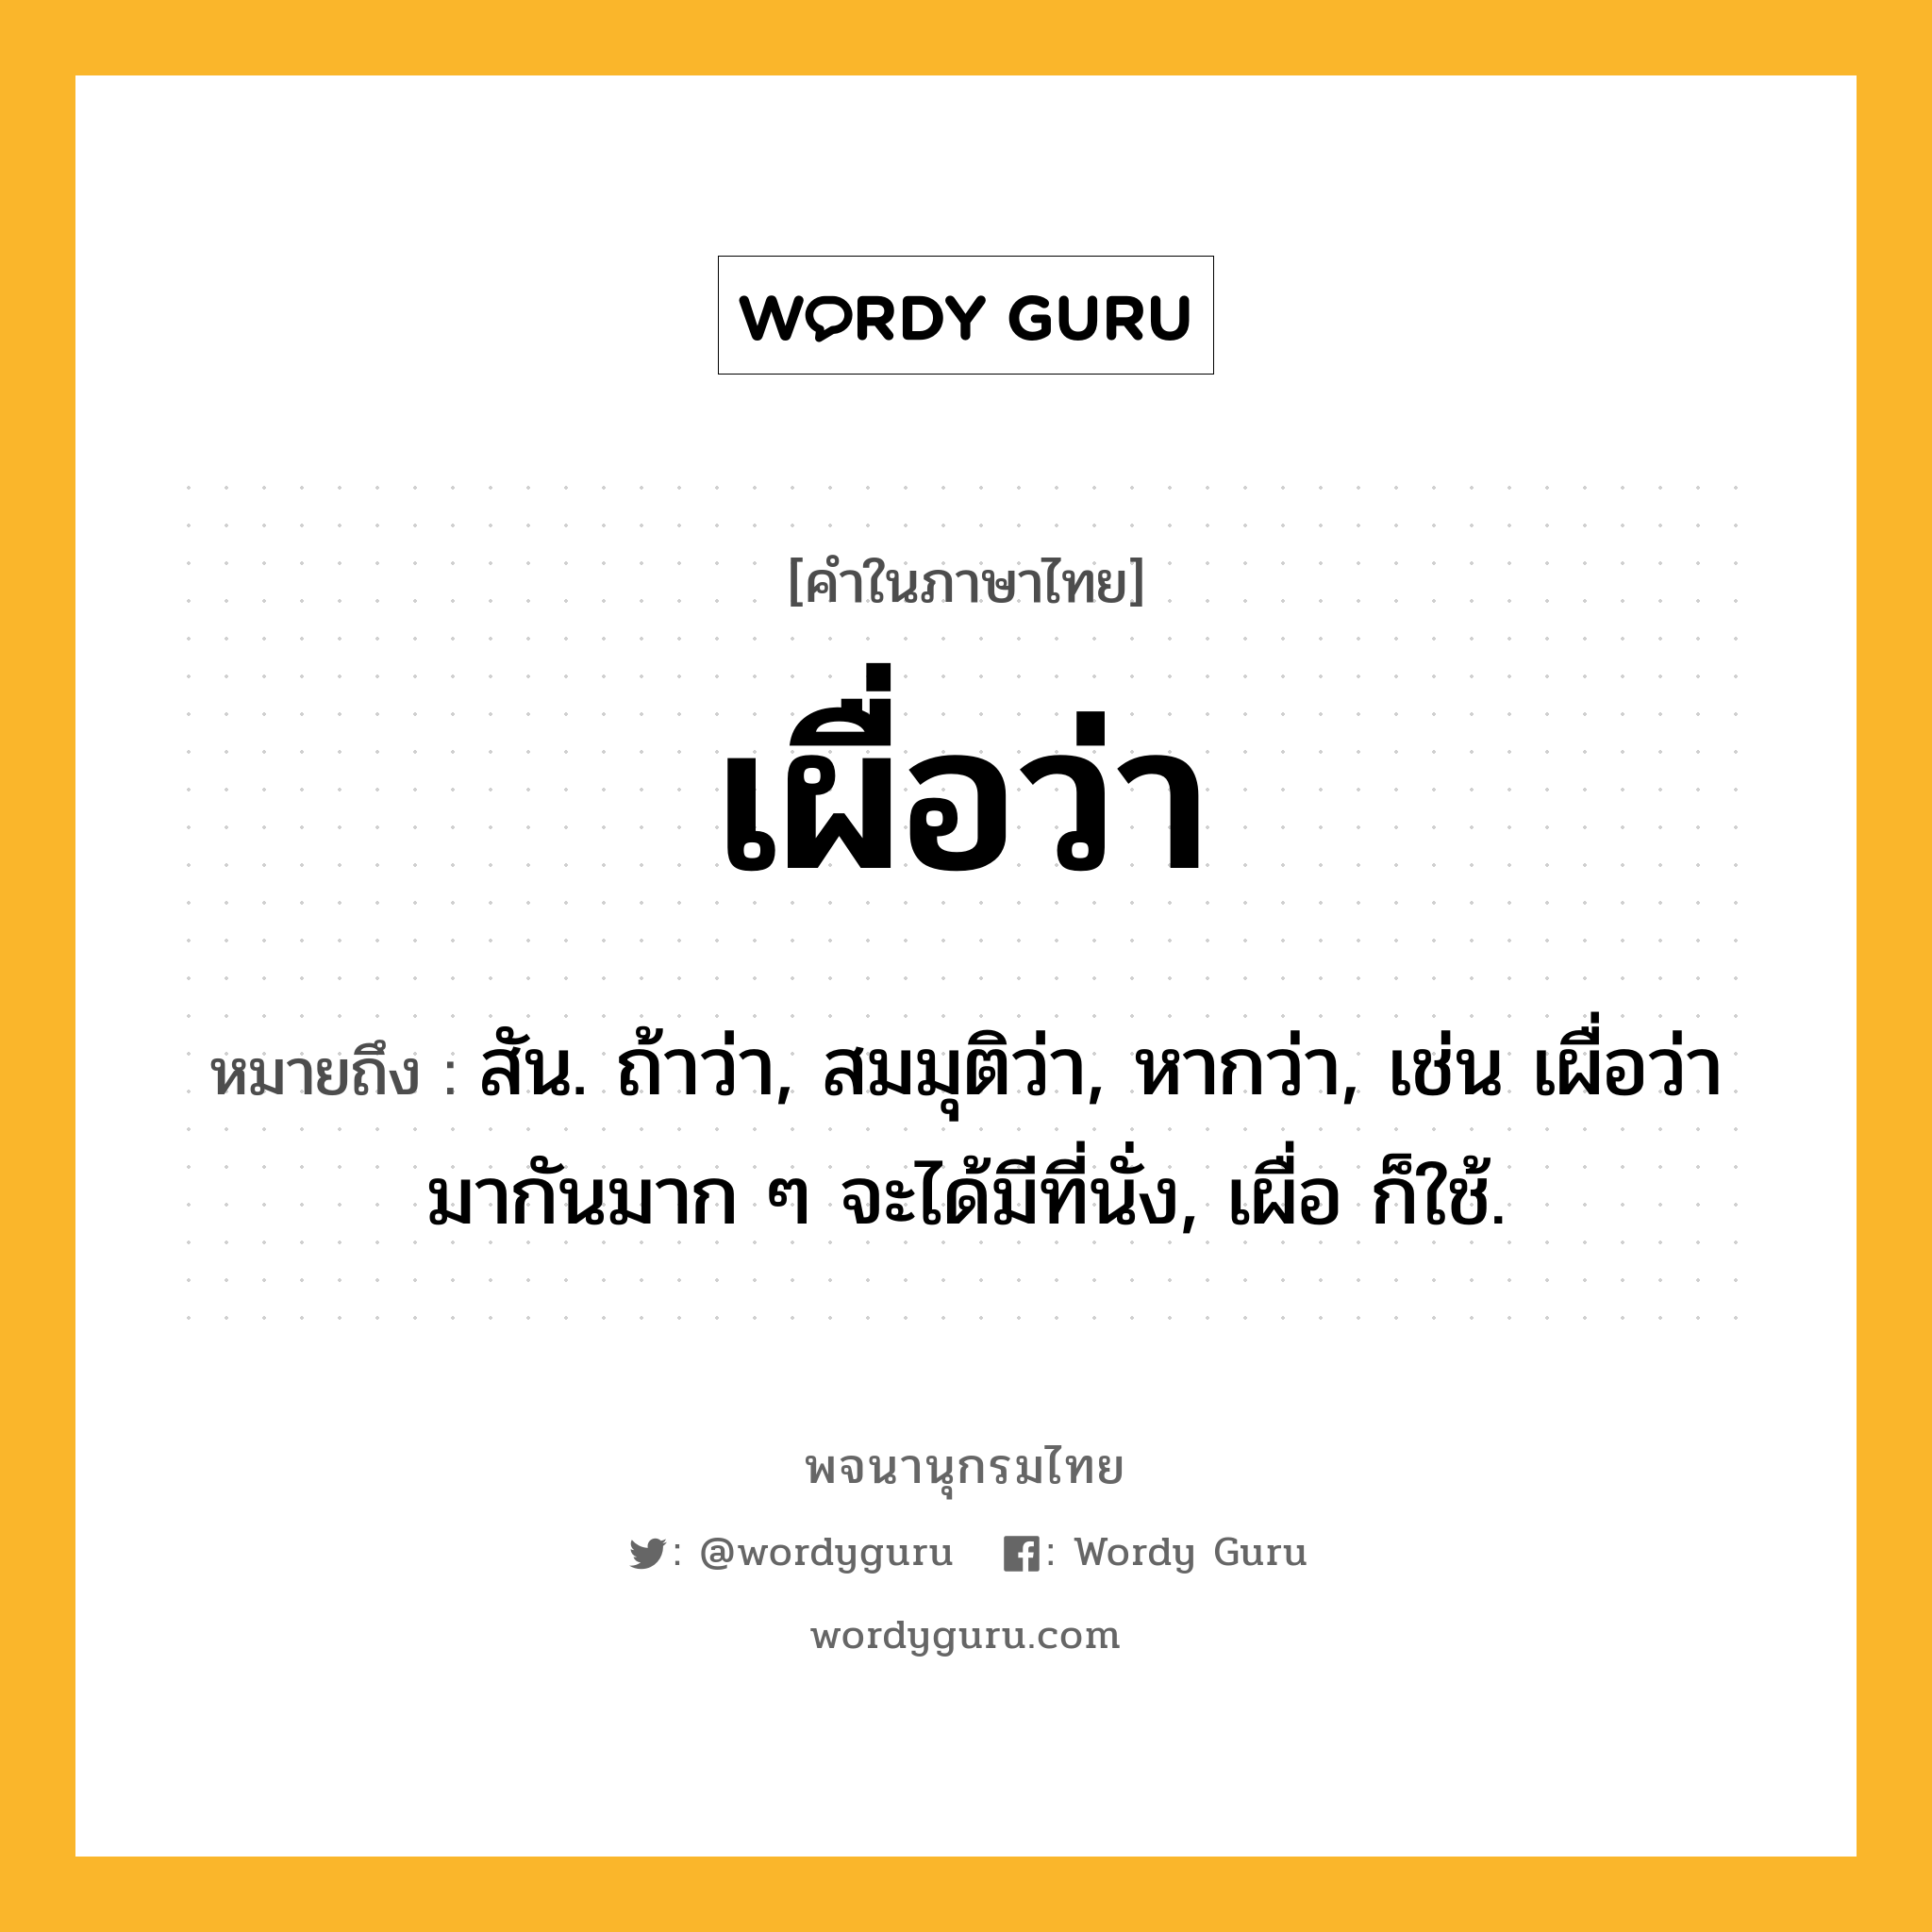 เผื่อว่า หมายถึงอะไร?, คำในภาษาไทย เผื่อว่า หมายถึง สัน. ถ้าว่า, สมมุติว่า, หากว่า, เช่น เผื่อว่ามากันมาก ๆ จะได้มีที่นั่ง, เผื่อ ก็ใช้.